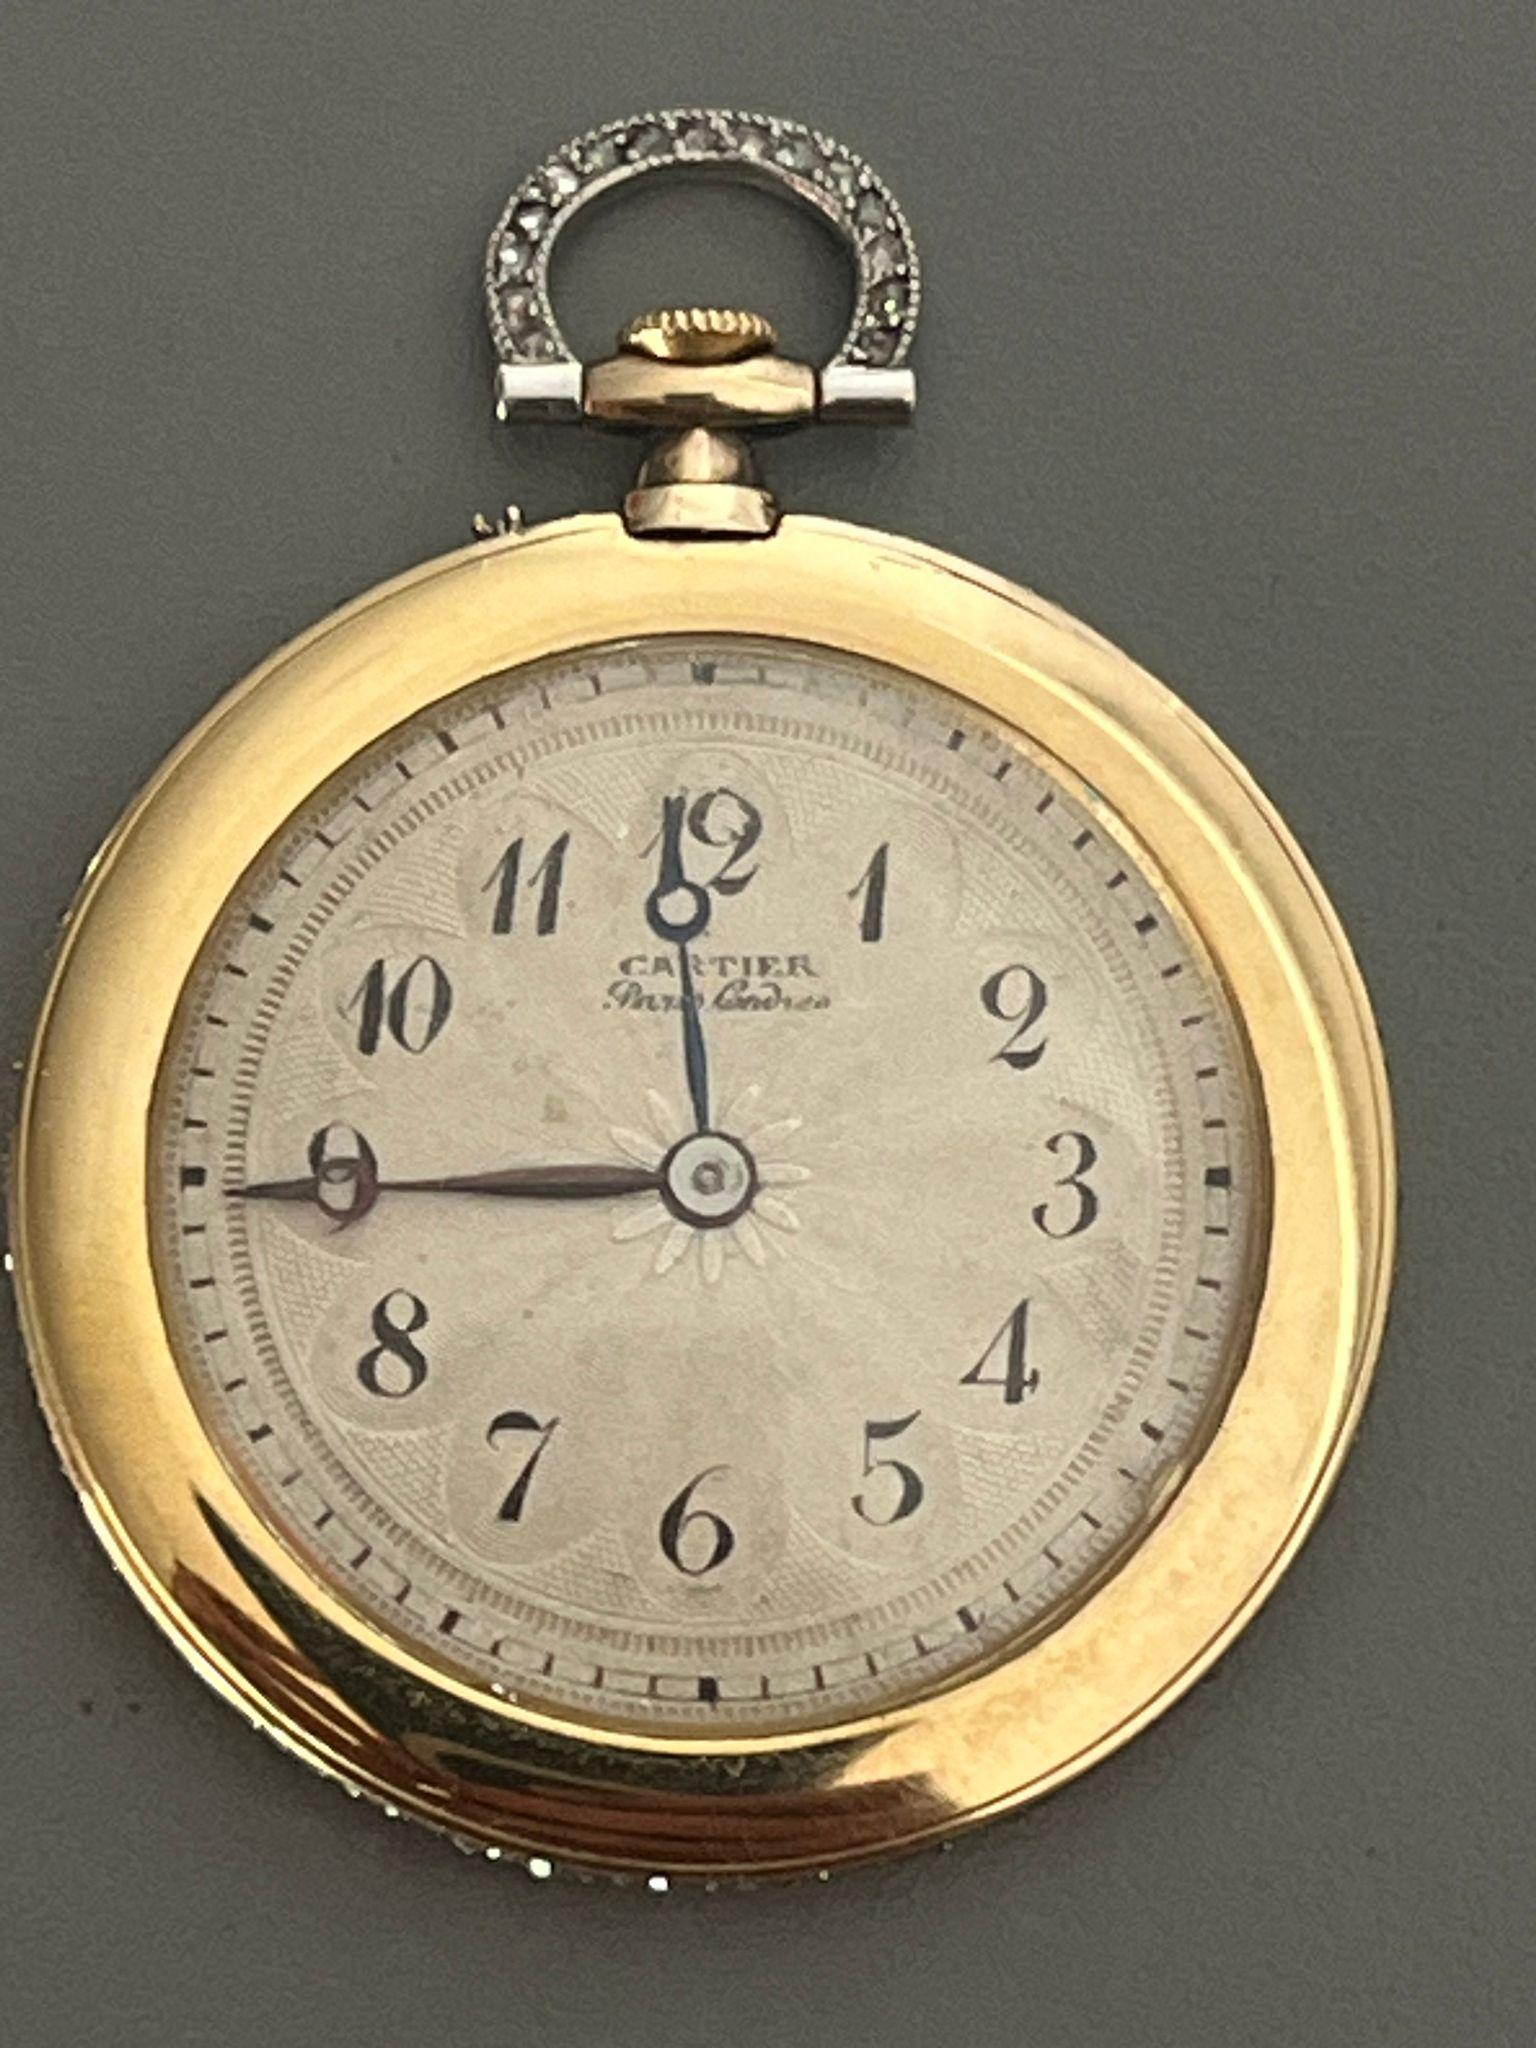 Belle Époque 18KY & Platinum Cartier Belle Epoque Watch C 1907